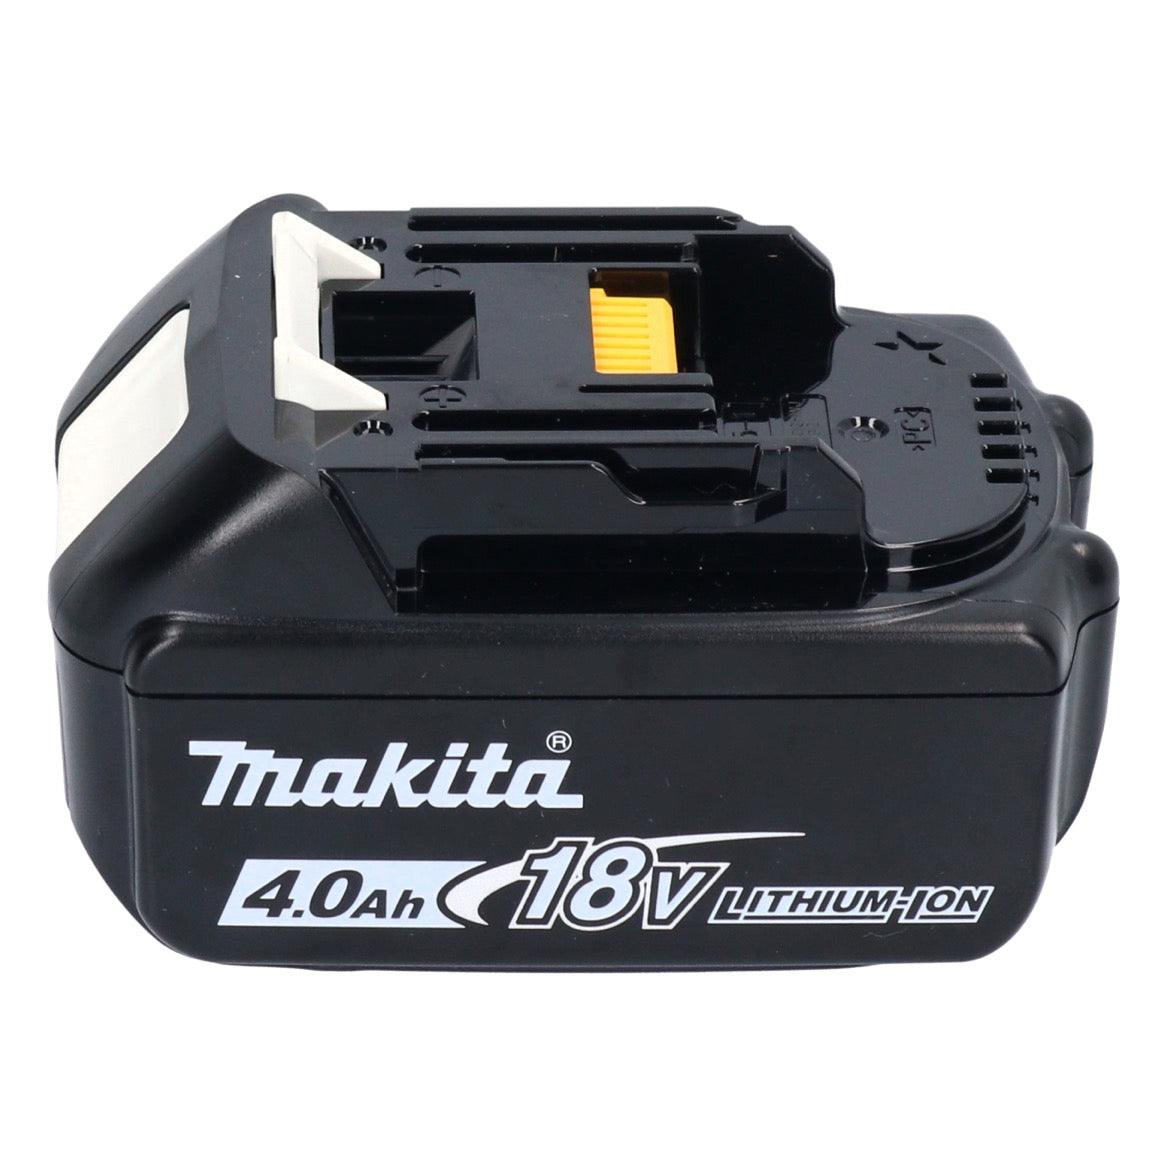 Taille-haie à batterie Makita DUH 507 M 18 V 50 cm + 1x batterie 4,0 Ah - sans chargeur